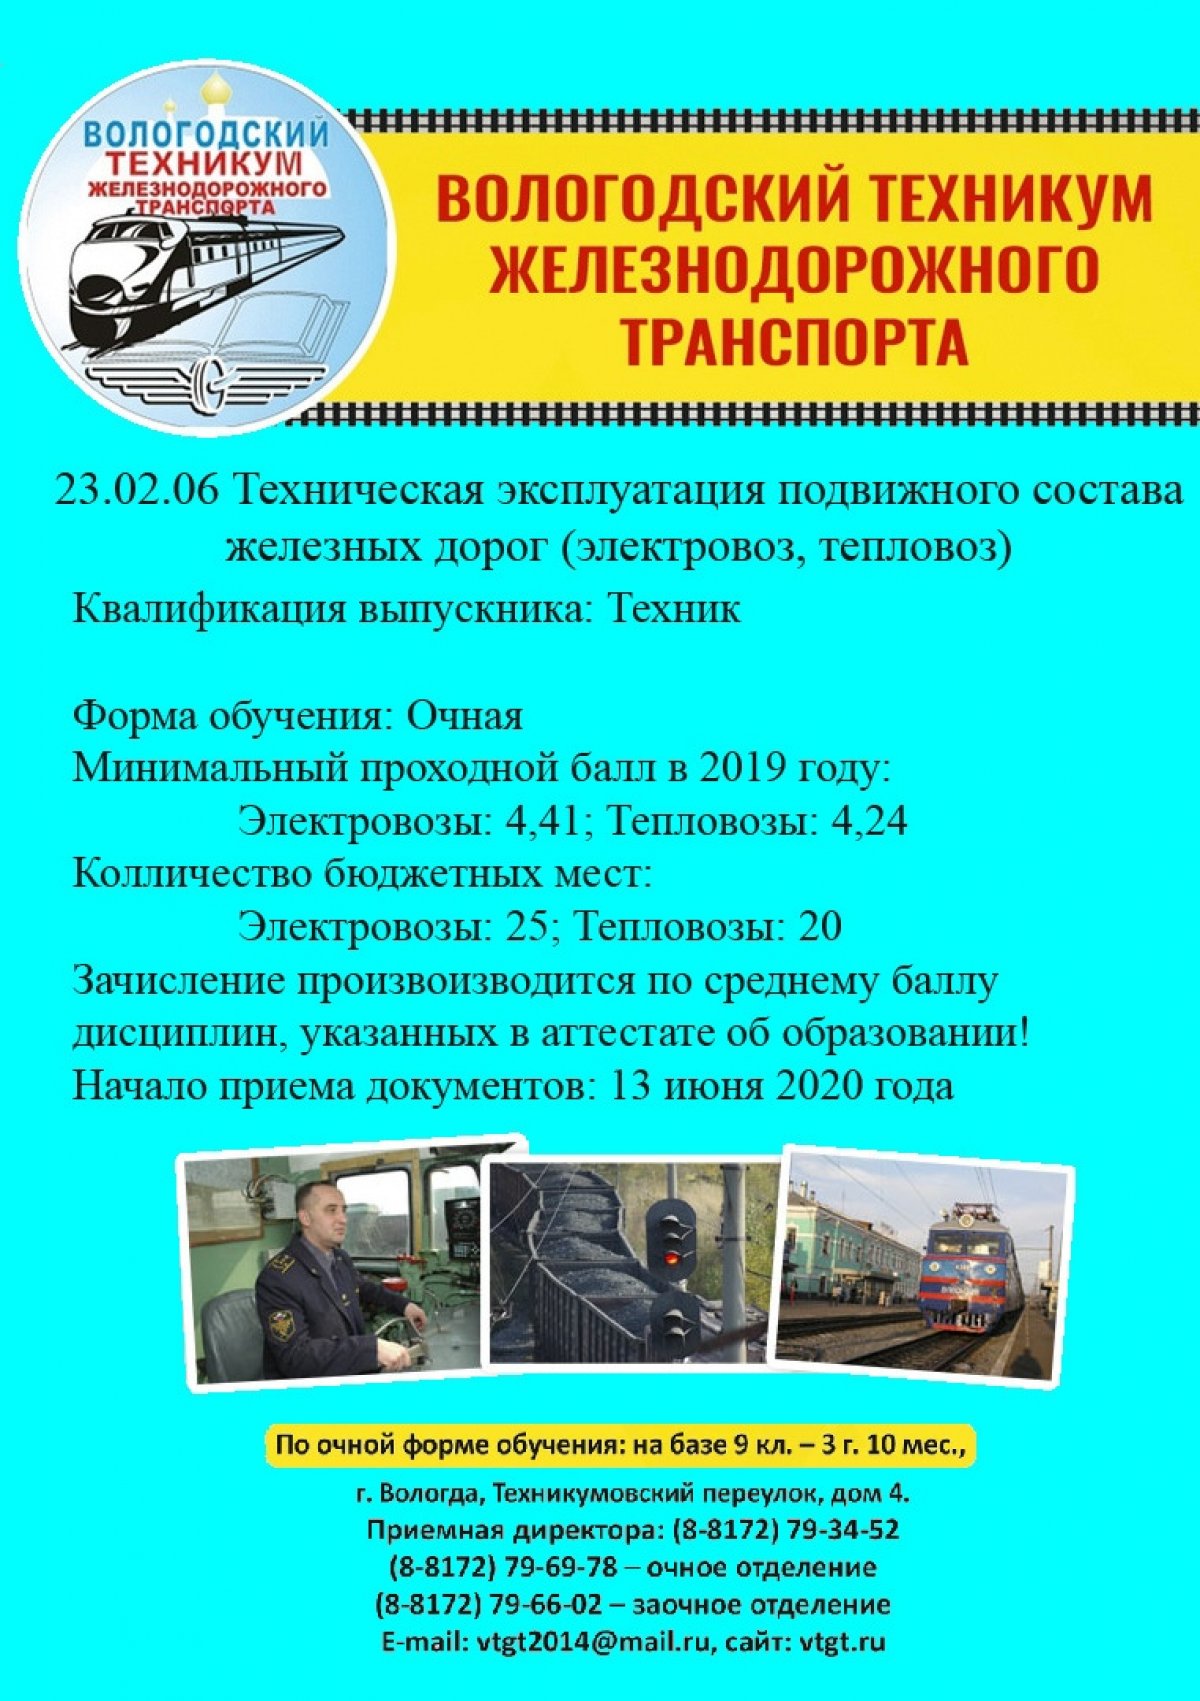 🚂 23.02.06 - Техническая эксплуатация подвижного состава железных дорог